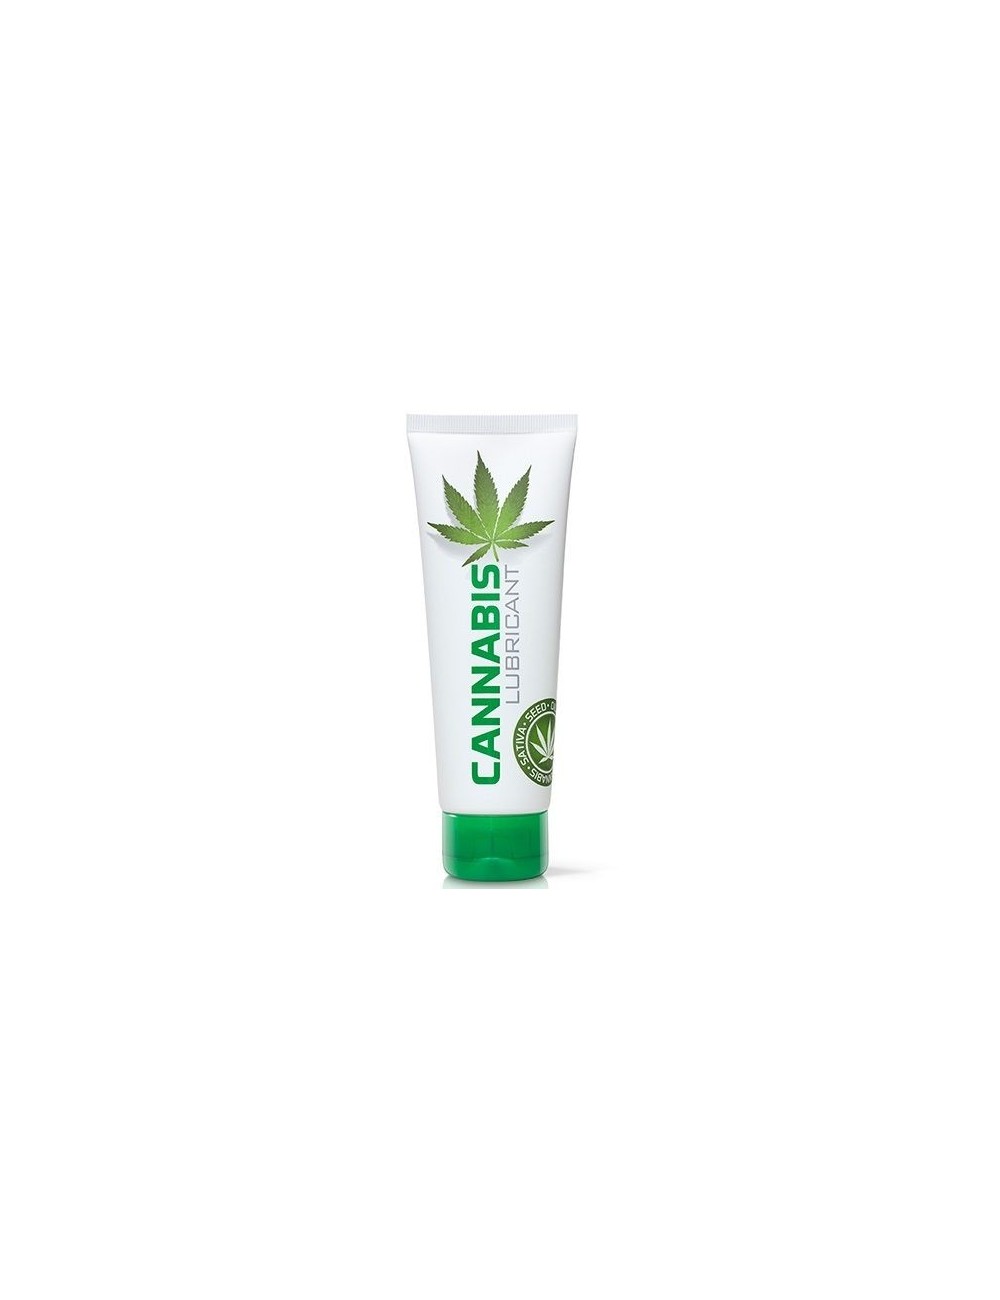 LUBRIFIANT COBECO CANNABIS 125ML - Huiles de massage - Cobeco Pharma